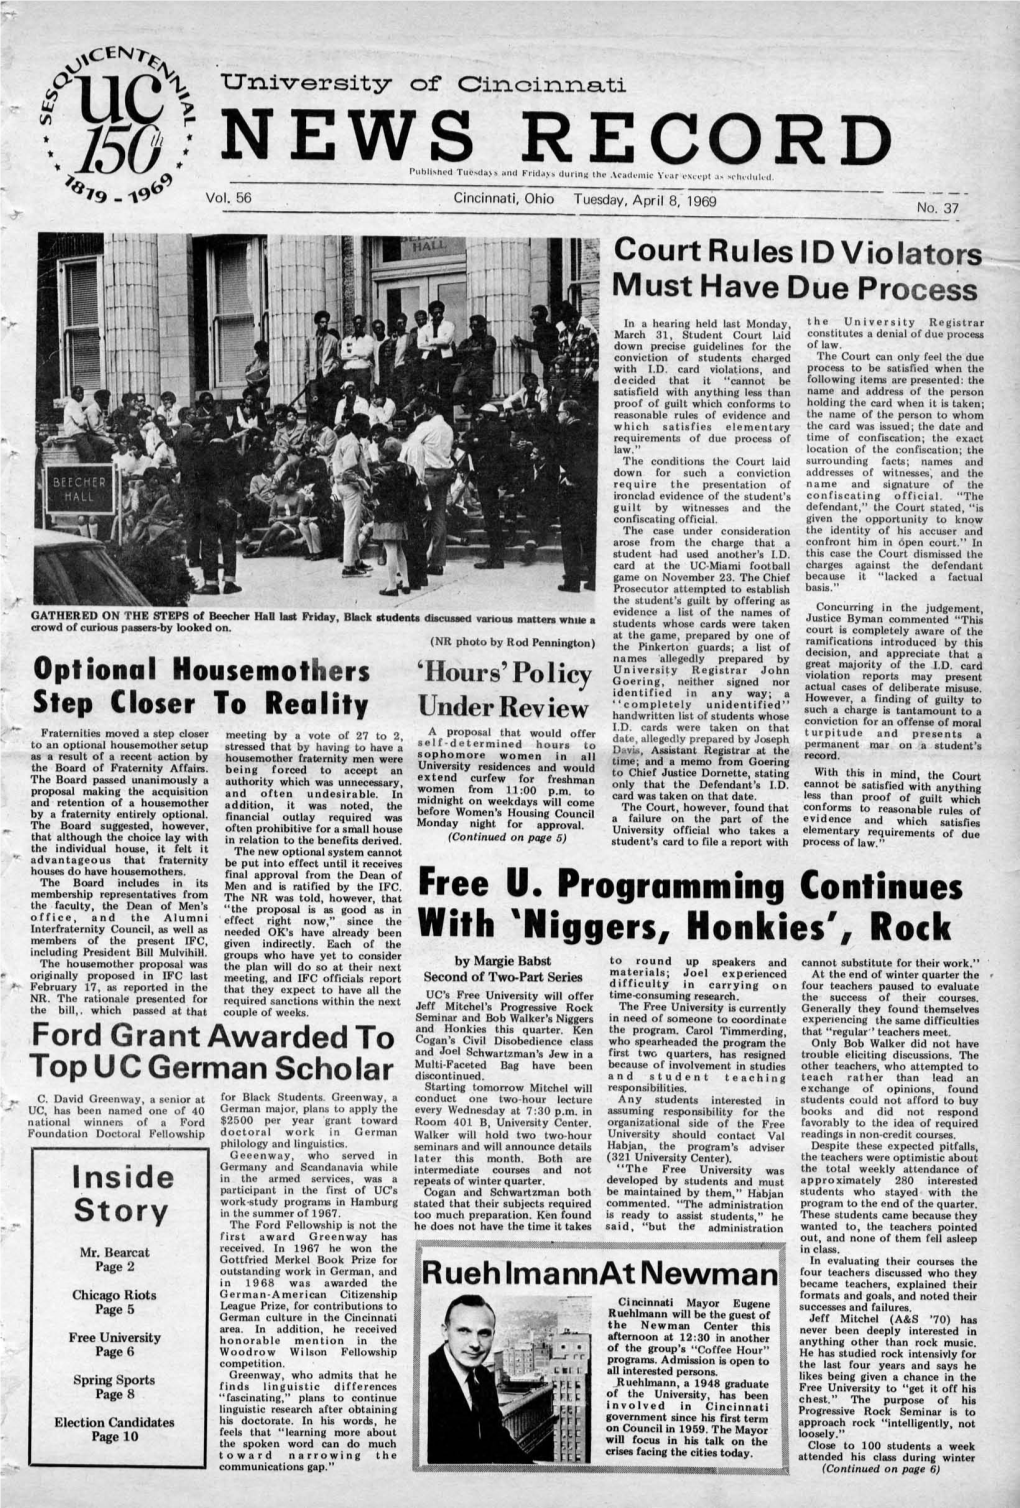 University of Cincinnati News Record. Tuesday, April 8, 1969. Vol. LVI, No